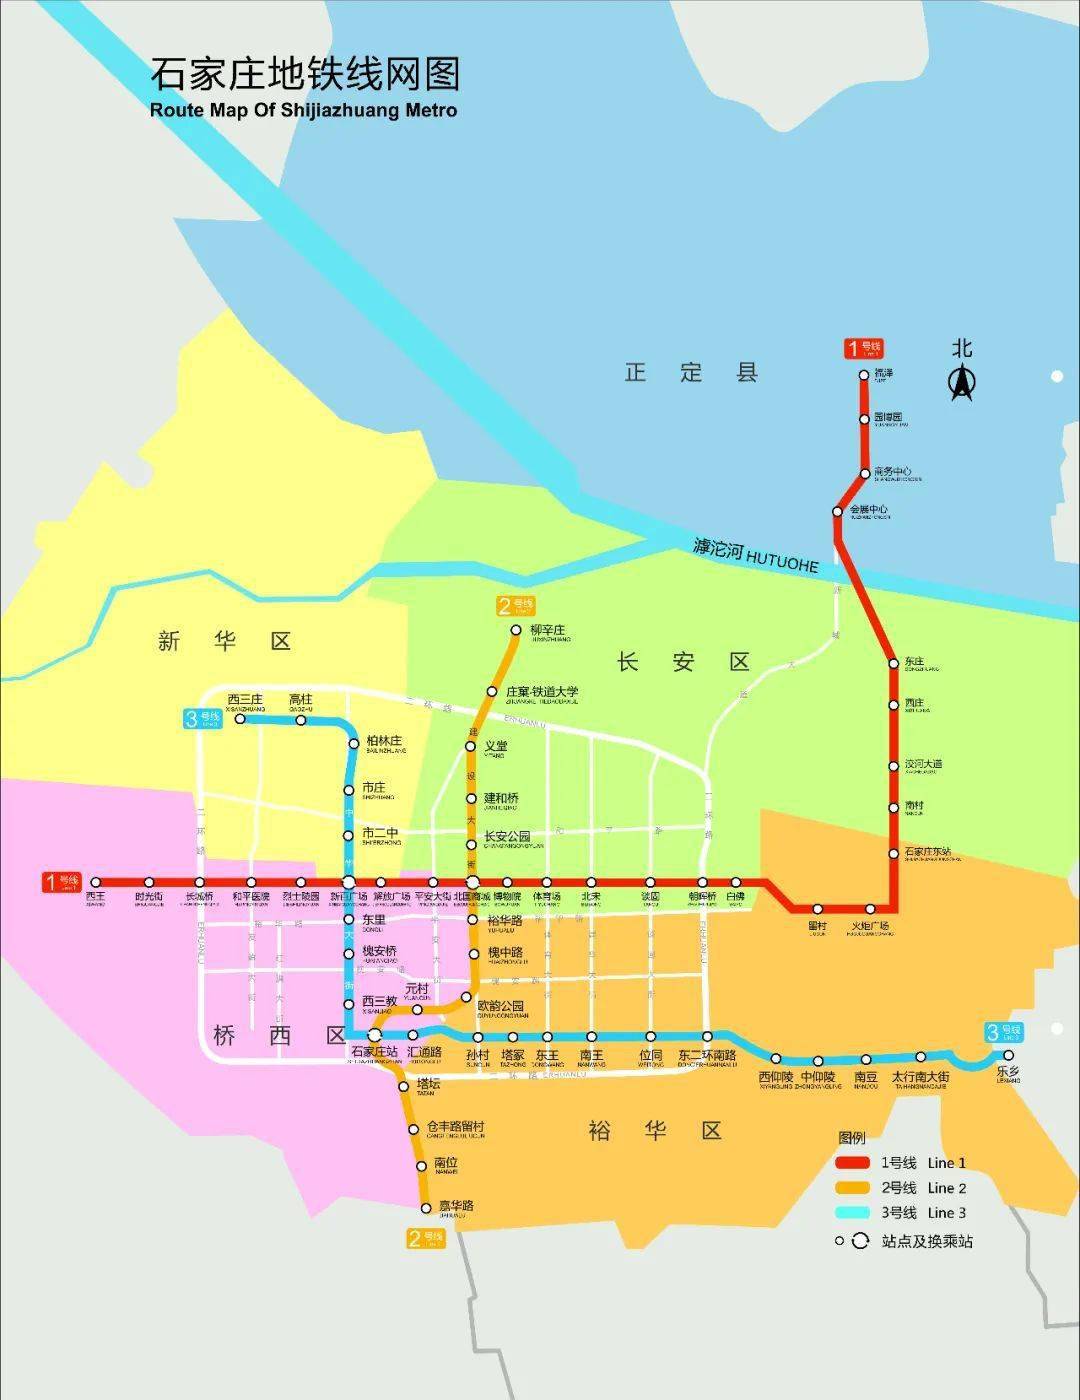 2021年4月6日运营启动,自4月6日起,石家庄地铁3号线各车站执行最新首